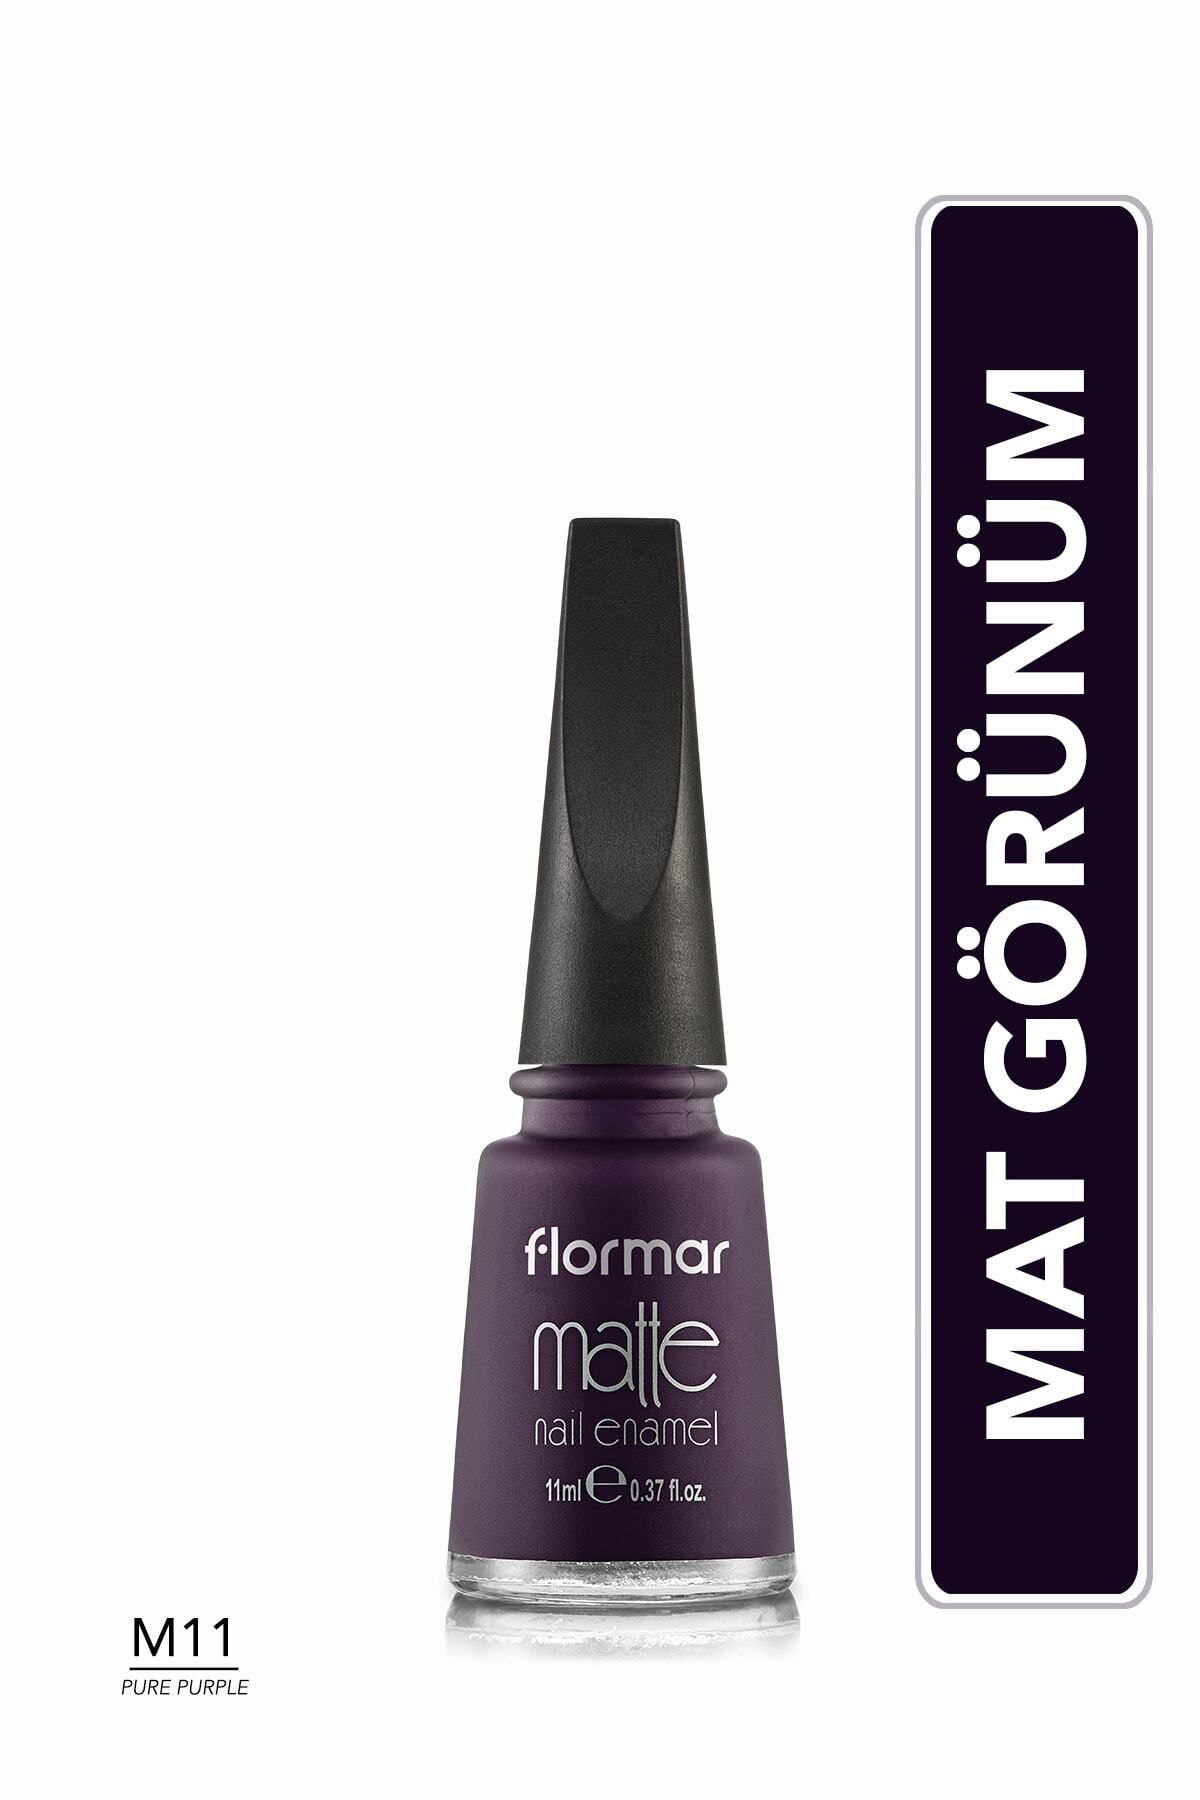 Flormar Oje Matte Nail Enamel M11 Pure Purple 34000004-m11